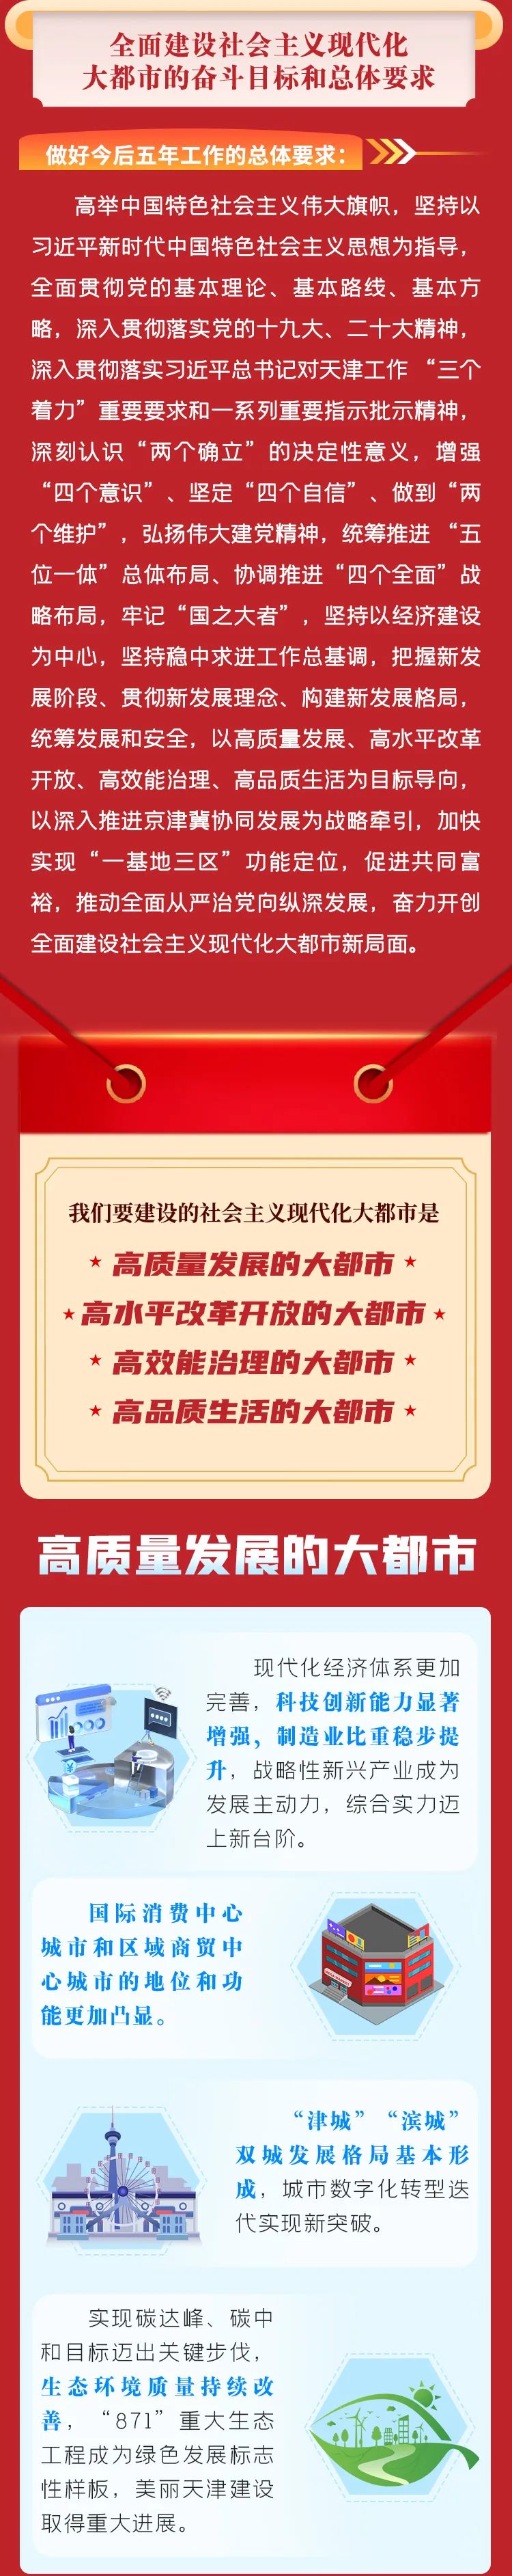 【聚焦党代会】一图读懂天津市第十二次党代会报告